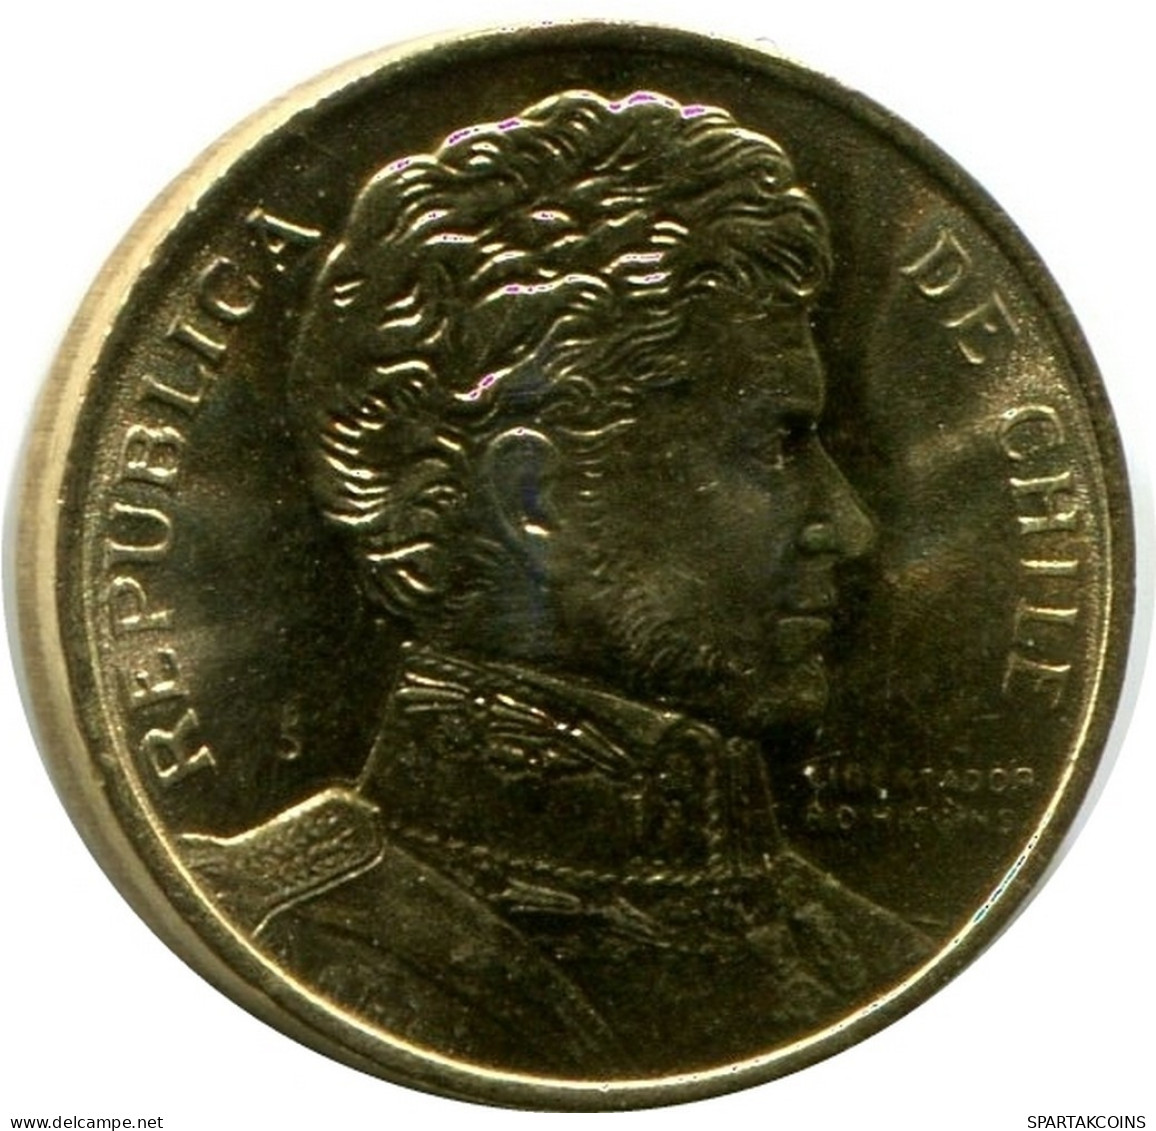 1 PESO 1990 CHILE UNC Coin #M10076.U.A - Cile